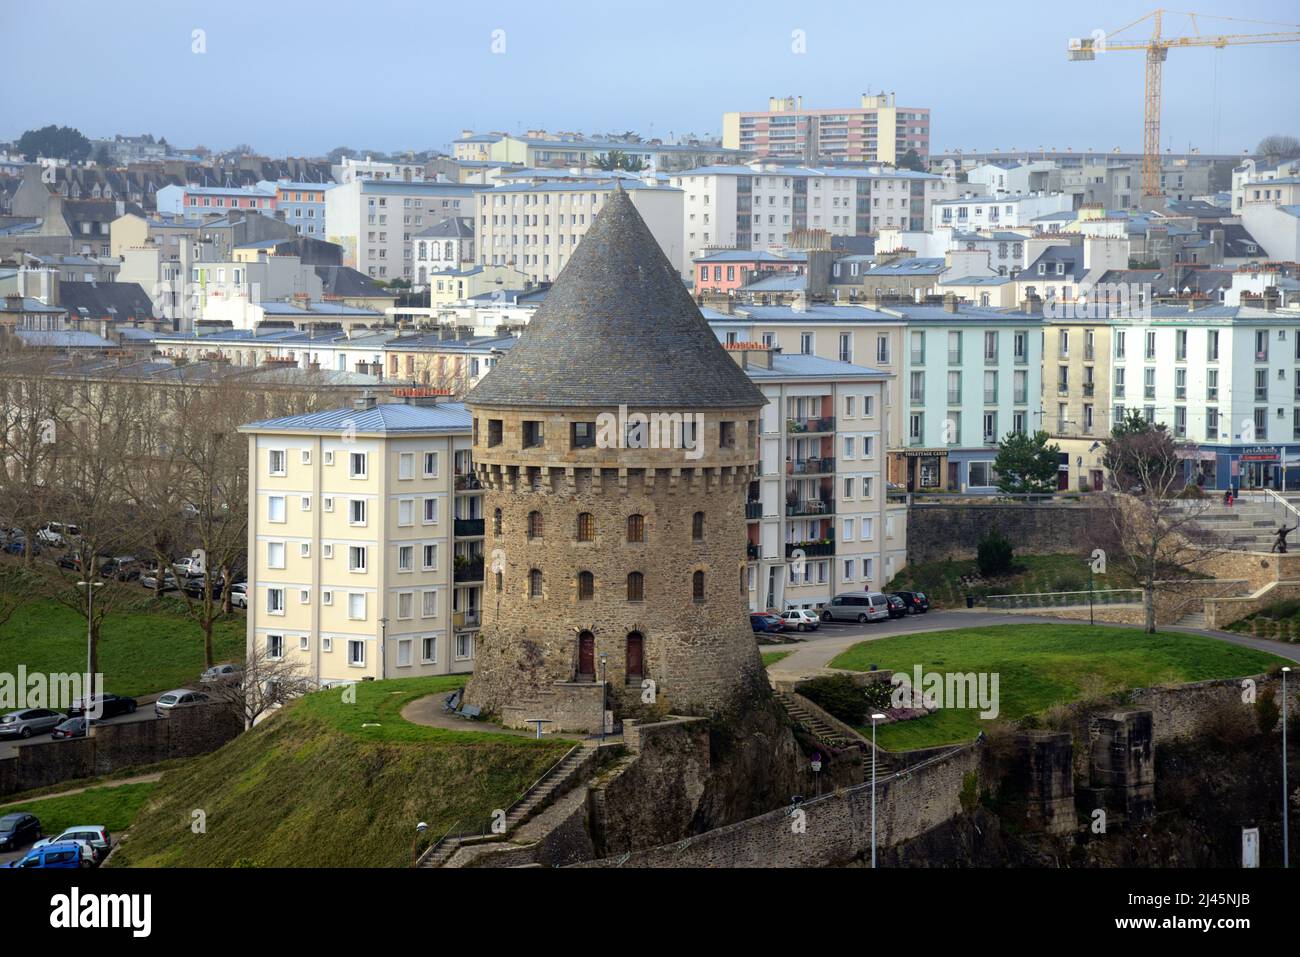 Stadtbild, Stadtbild oder Blick auf den mittelalterlichen Turm, Tour Tanguy oder Tanguy Tower & modernistische Gebäude & Skyline in Brest Bretagne Frankreich Stockfoto